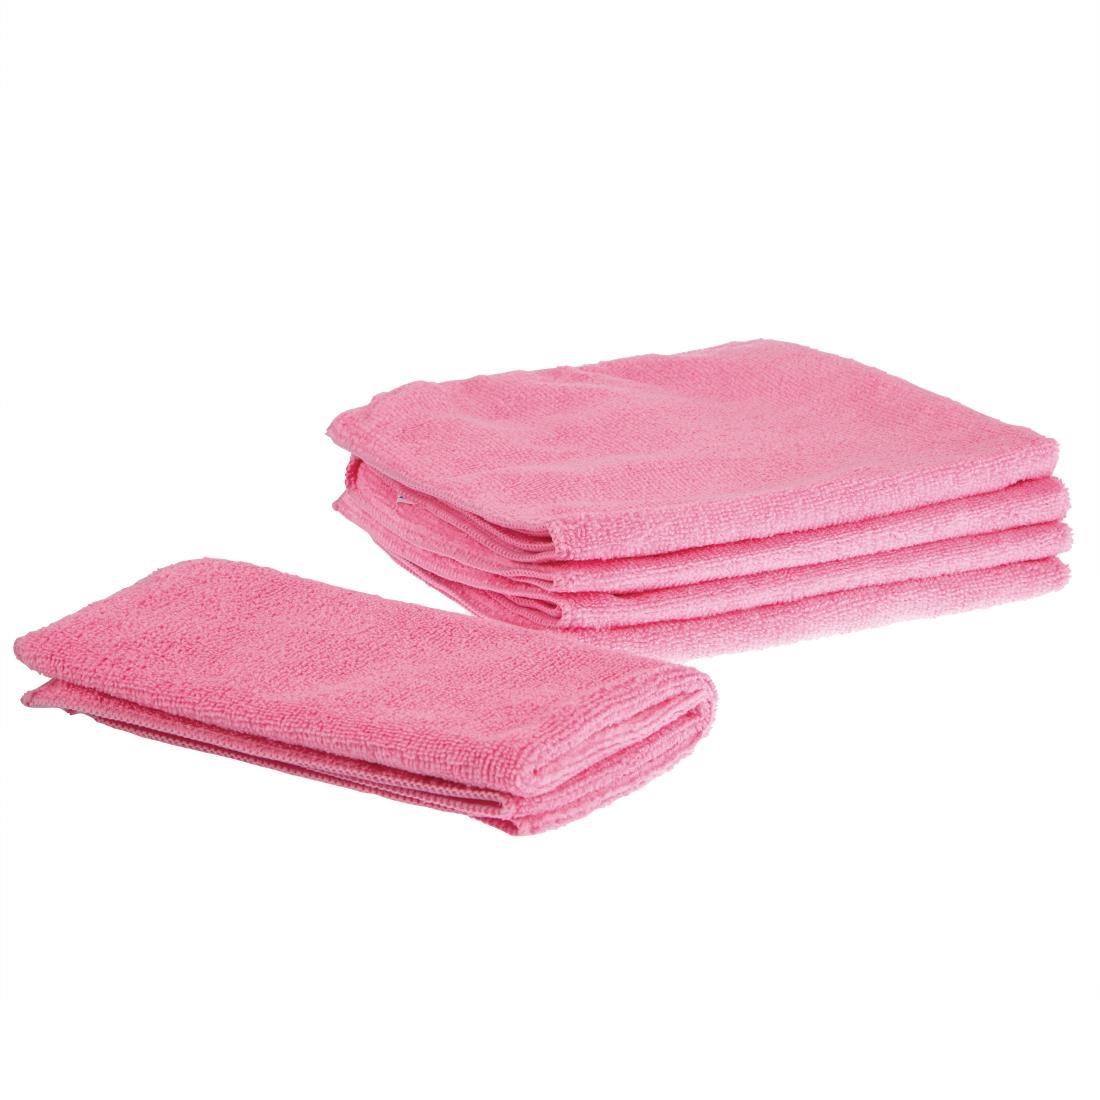 Jantex Microfibre Cloths Pink (Pack of 5) - DN840  - 2